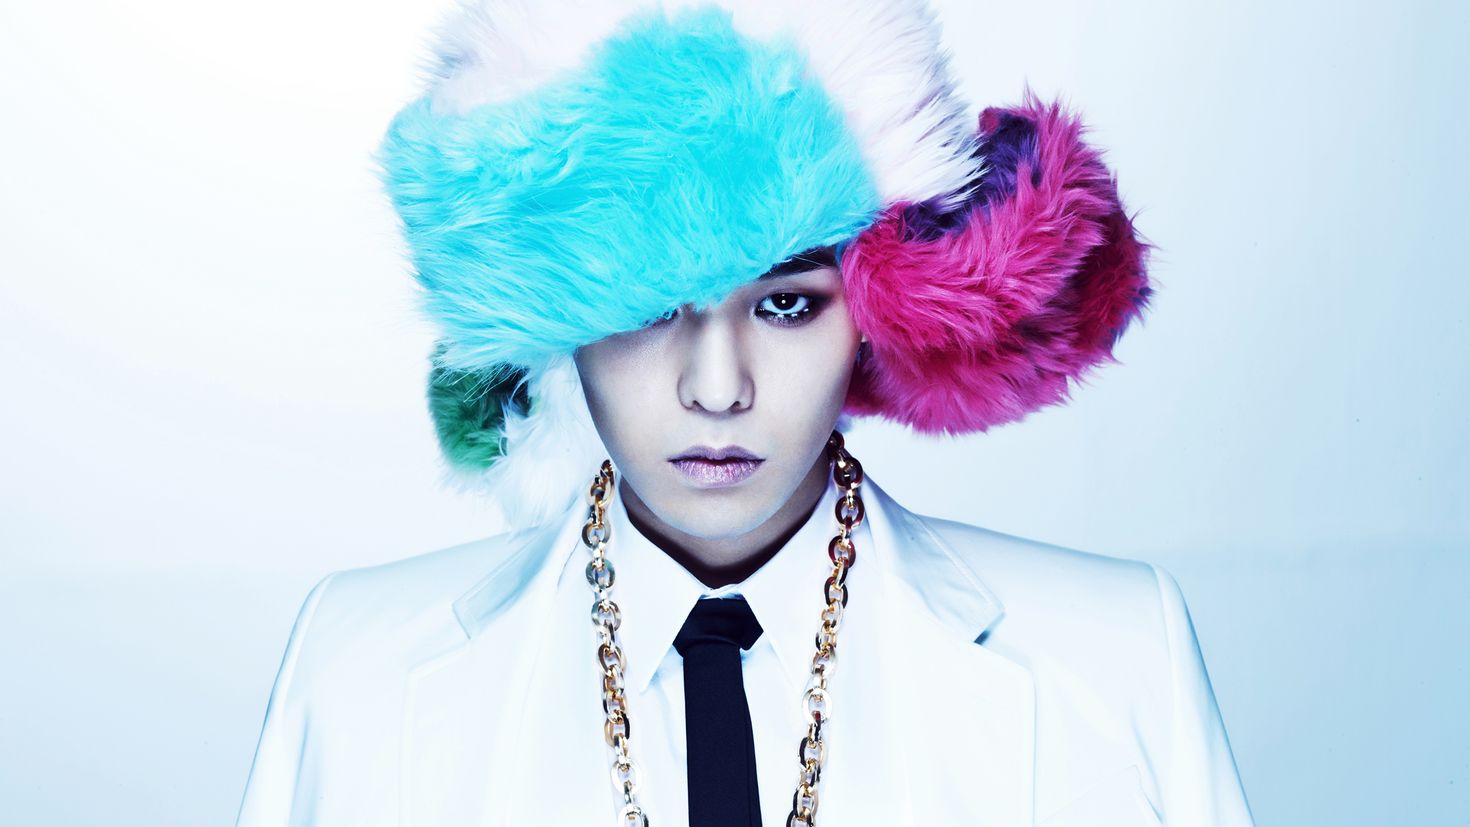 Май биг из биг. G-Dragon. Big Bang g-Dragon. Квон Джи ён. Джи драгон из Биг бэнг.